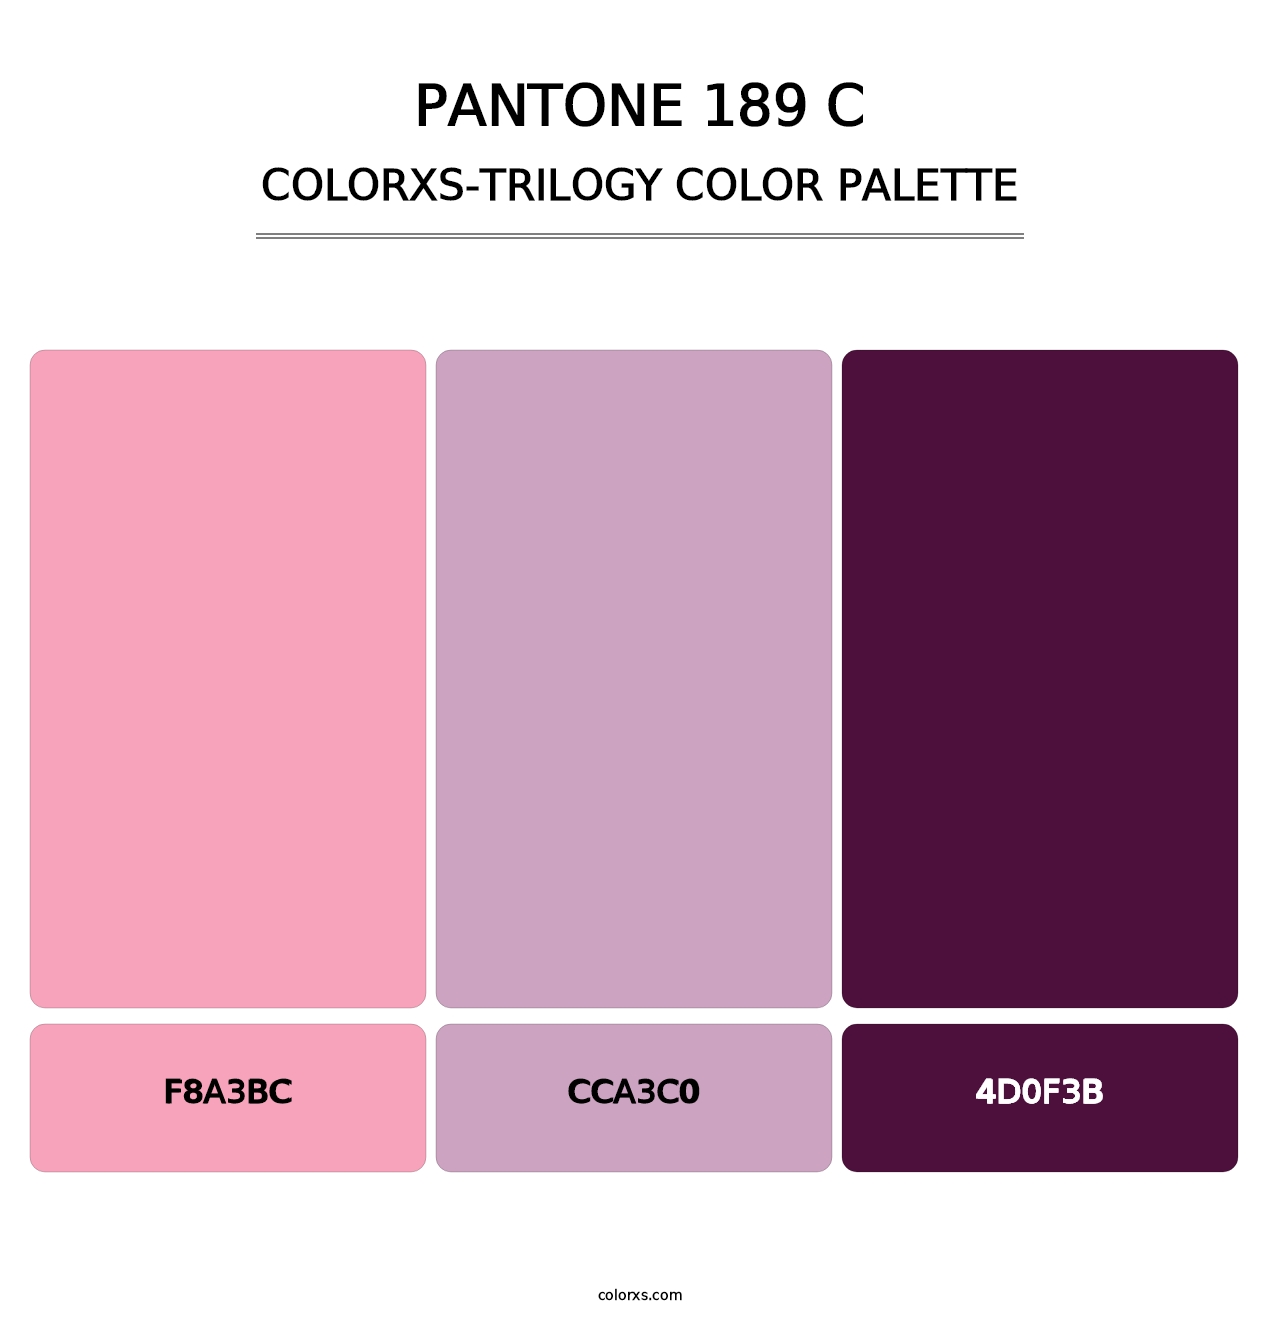 PANTONE 189 C - Colorxs Trilogy Palette